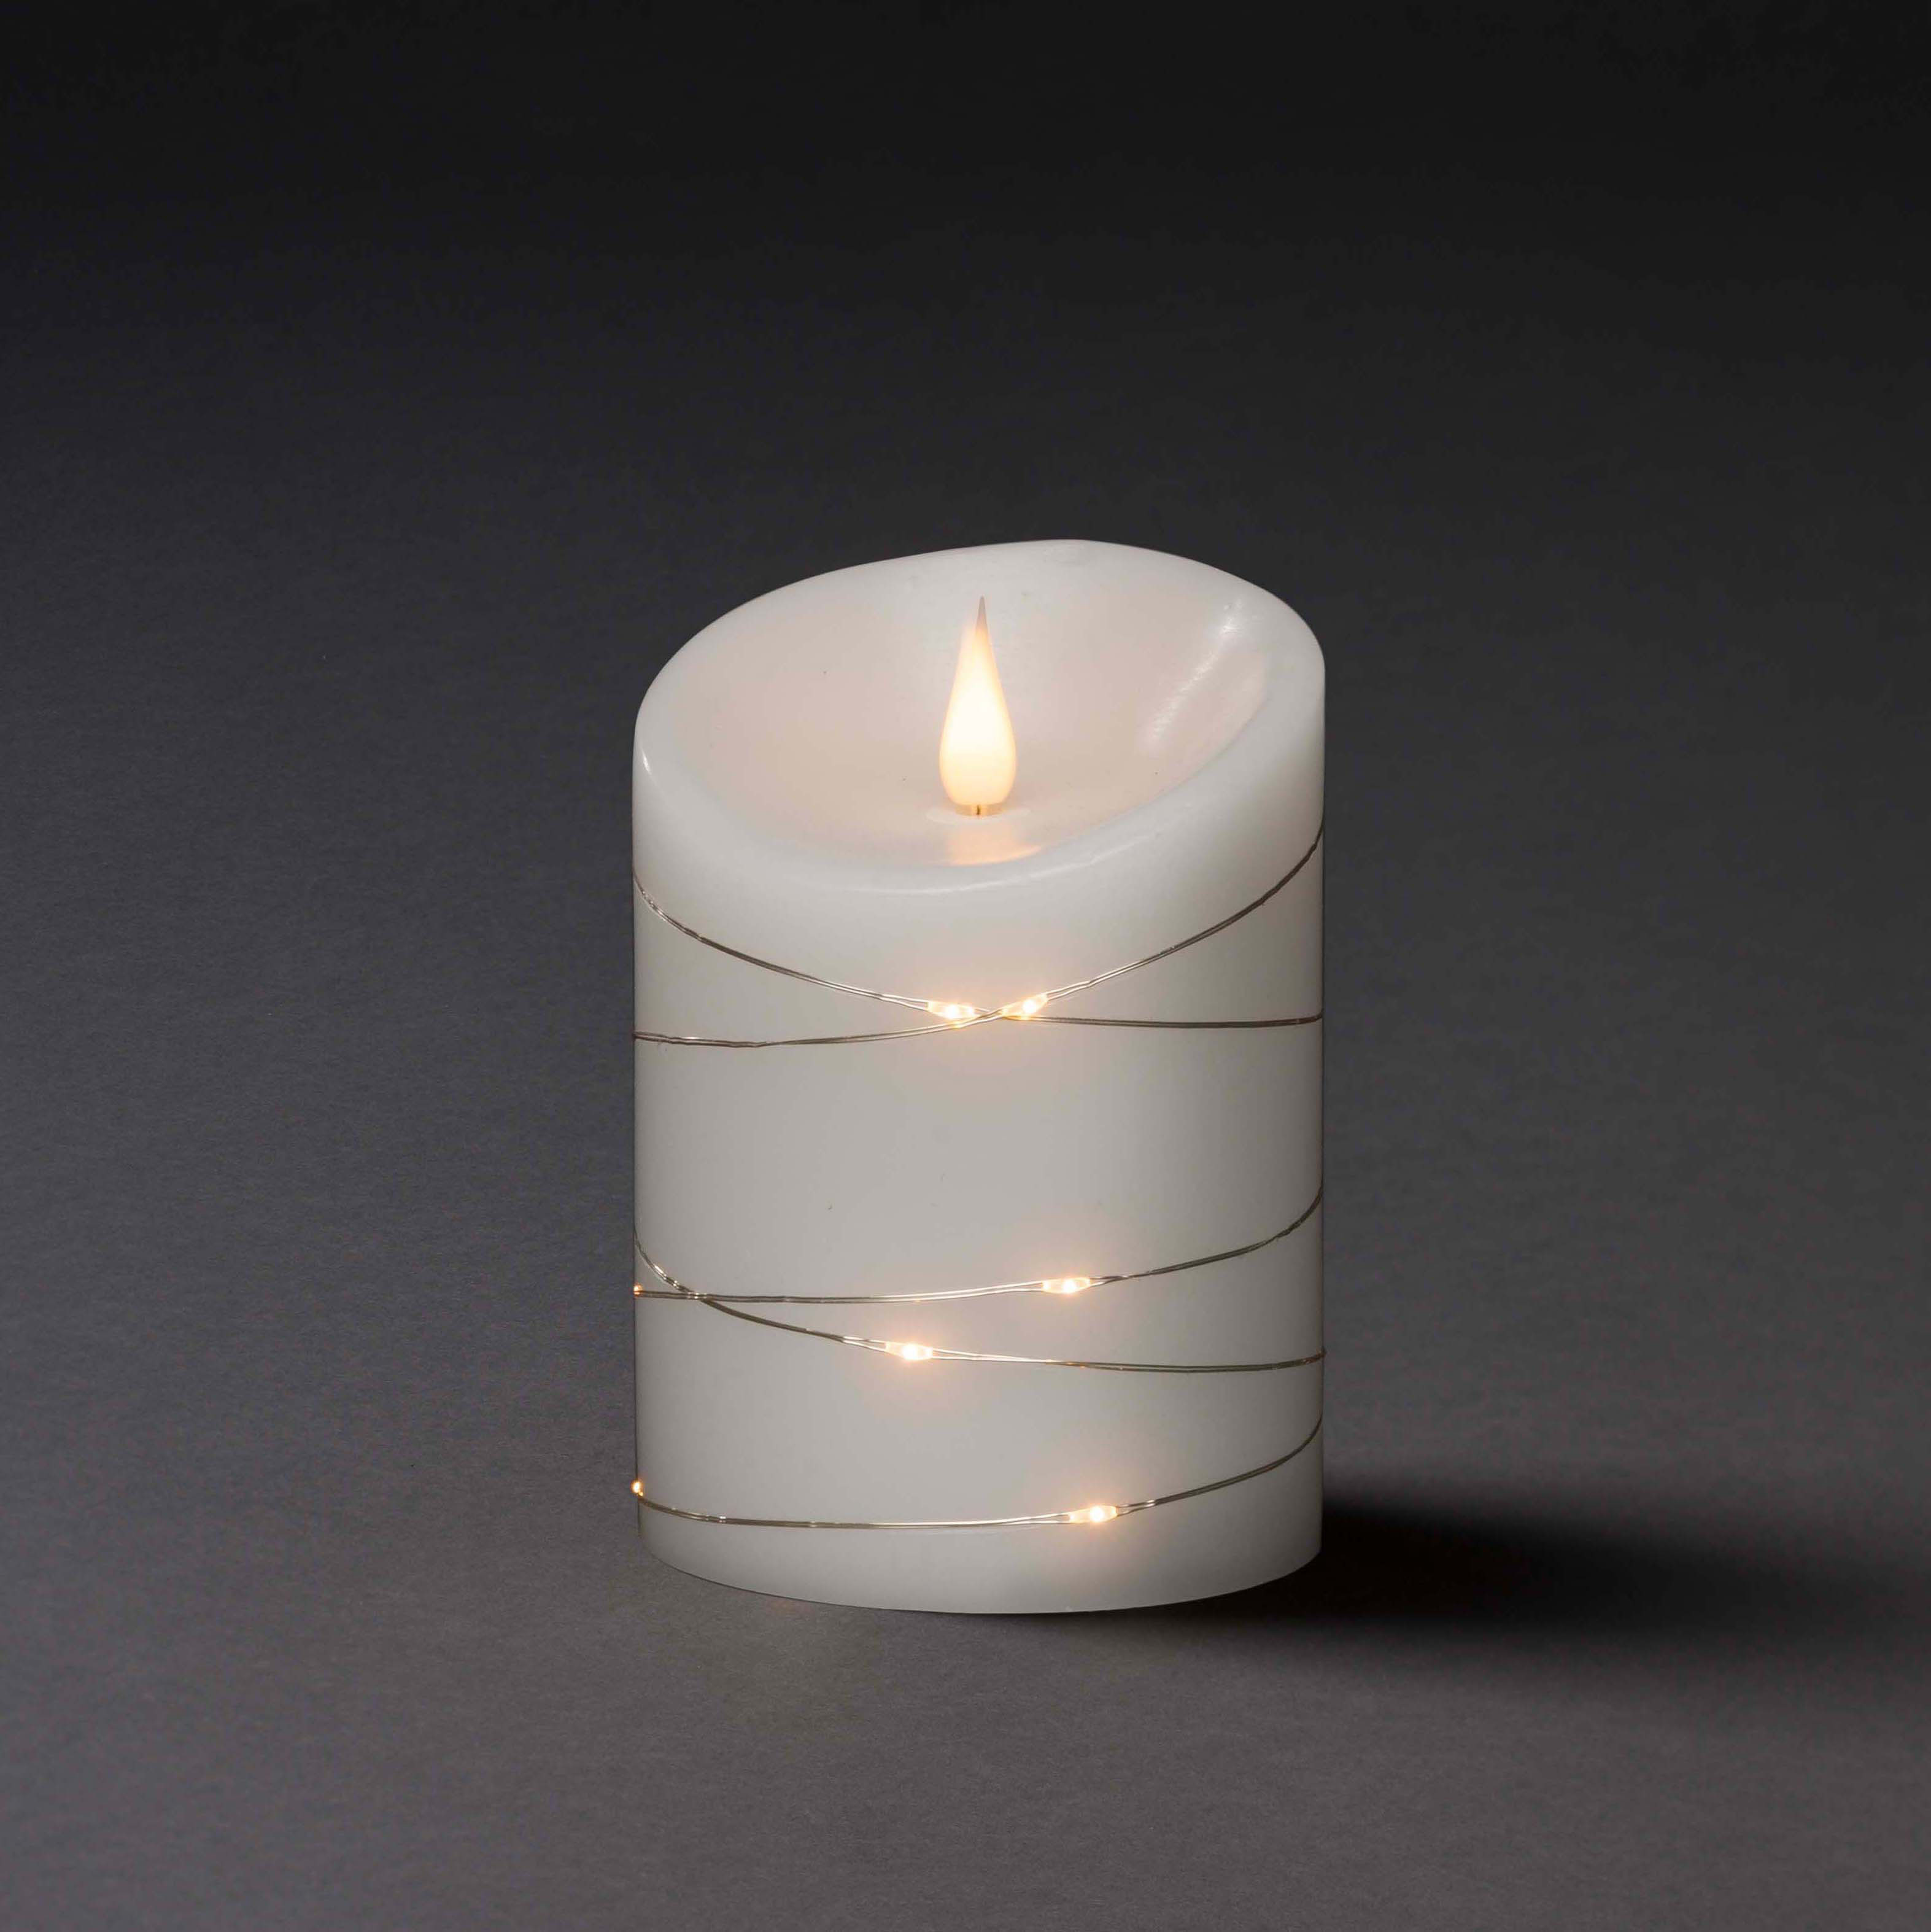 KONSTSMIDE LED Echtwachskerze mit 3D Echtwachskerze, Flamme Weiß, Warm Weiß umwickelt Draht und silbernen LED